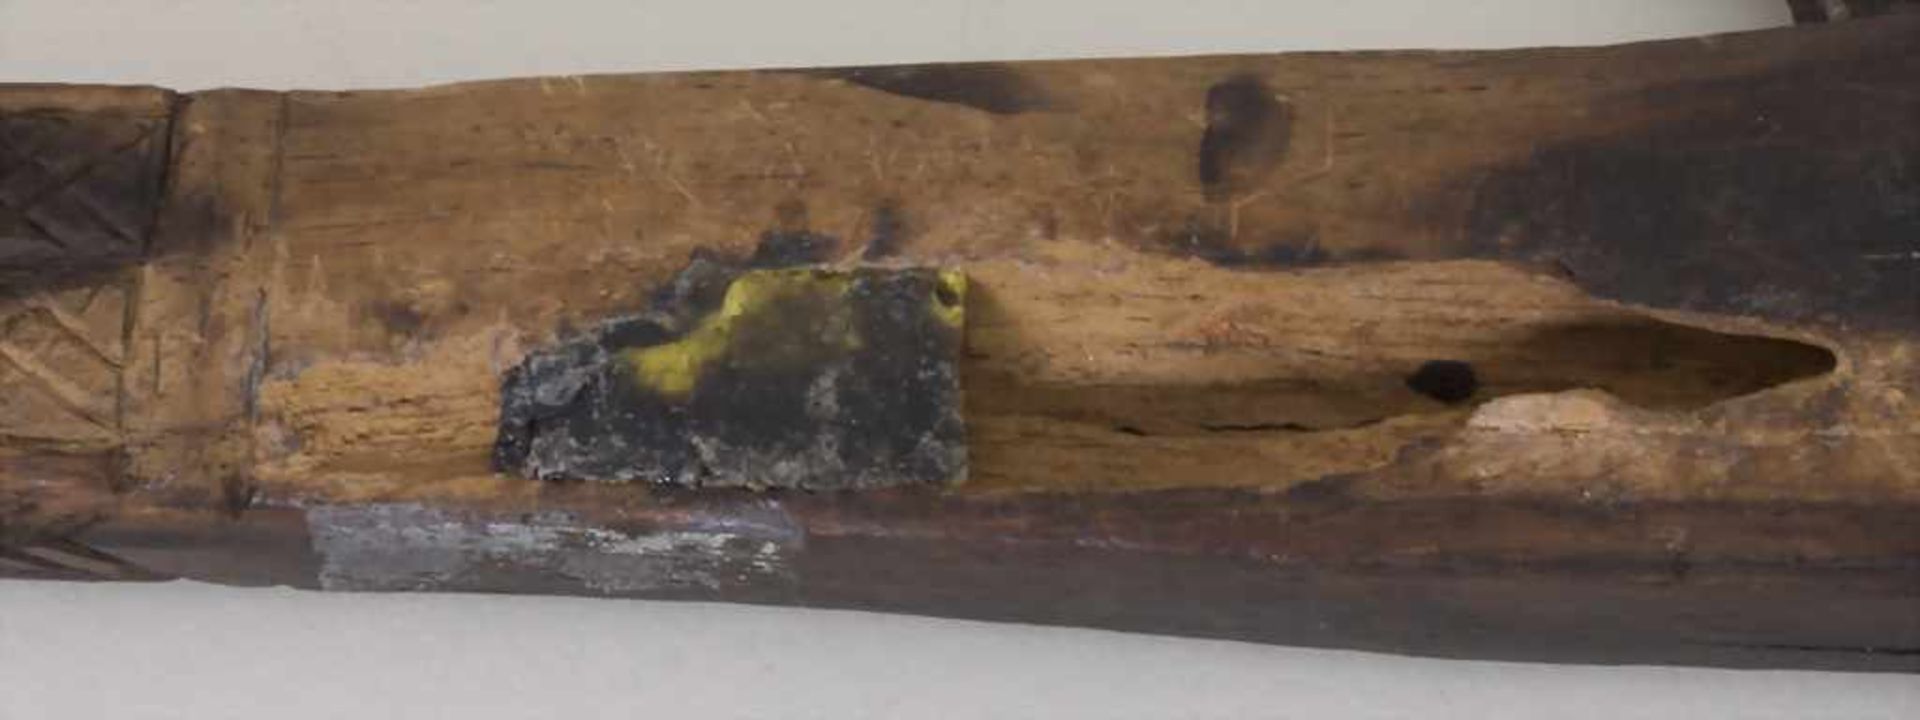 Axt mit Haken / An axe with hook, wohl NordafrikaMaterial: Holz, dunkel gebeizt, Eisen, Länge: 54 - Bild 2 aus 3